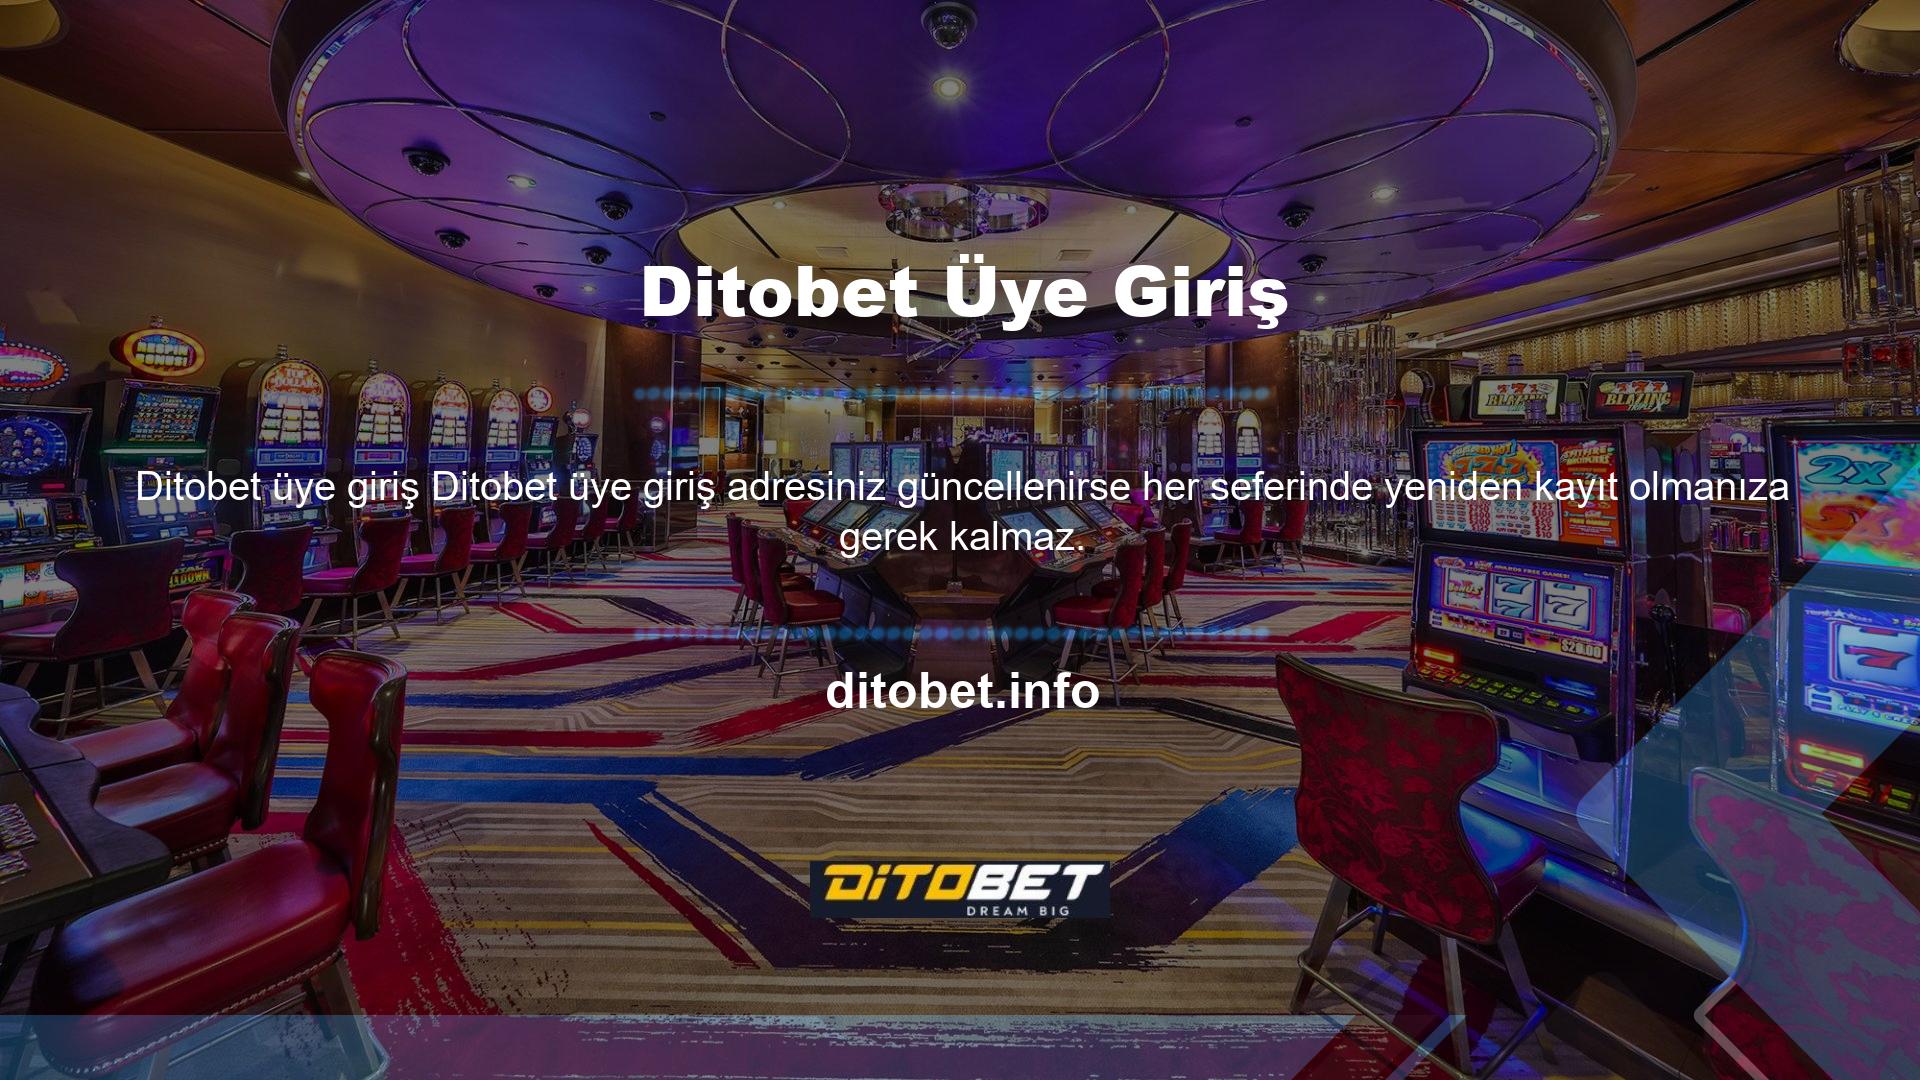 Ditobet kayıt işlemini tamamladıktan sonra Ditobet ailesinin bir parçası oluyorsunuz